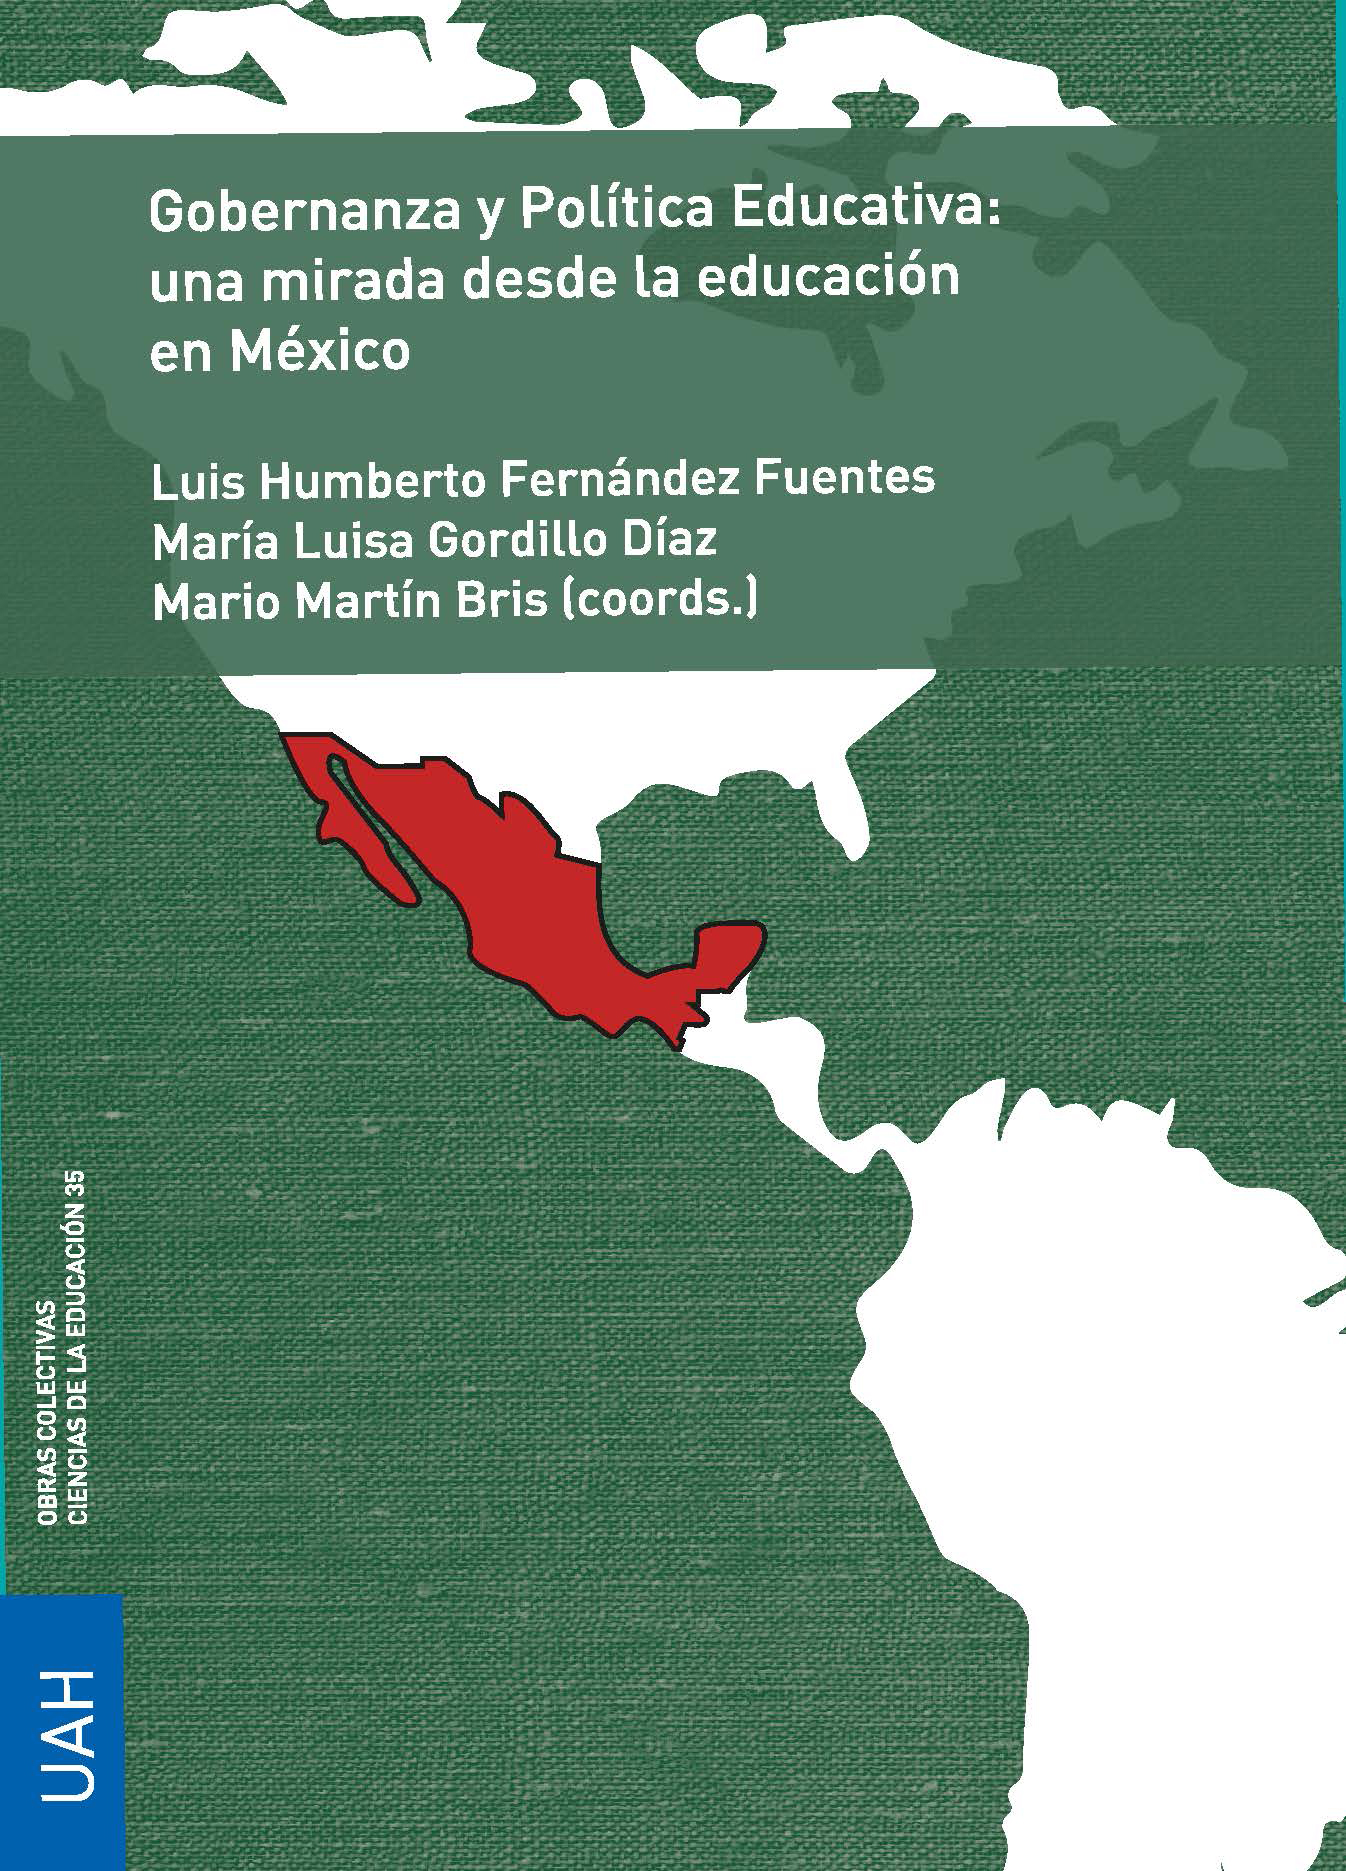 Gobernanza y Política Educativa: una mirada desde la educación en México - Libro electrónico-